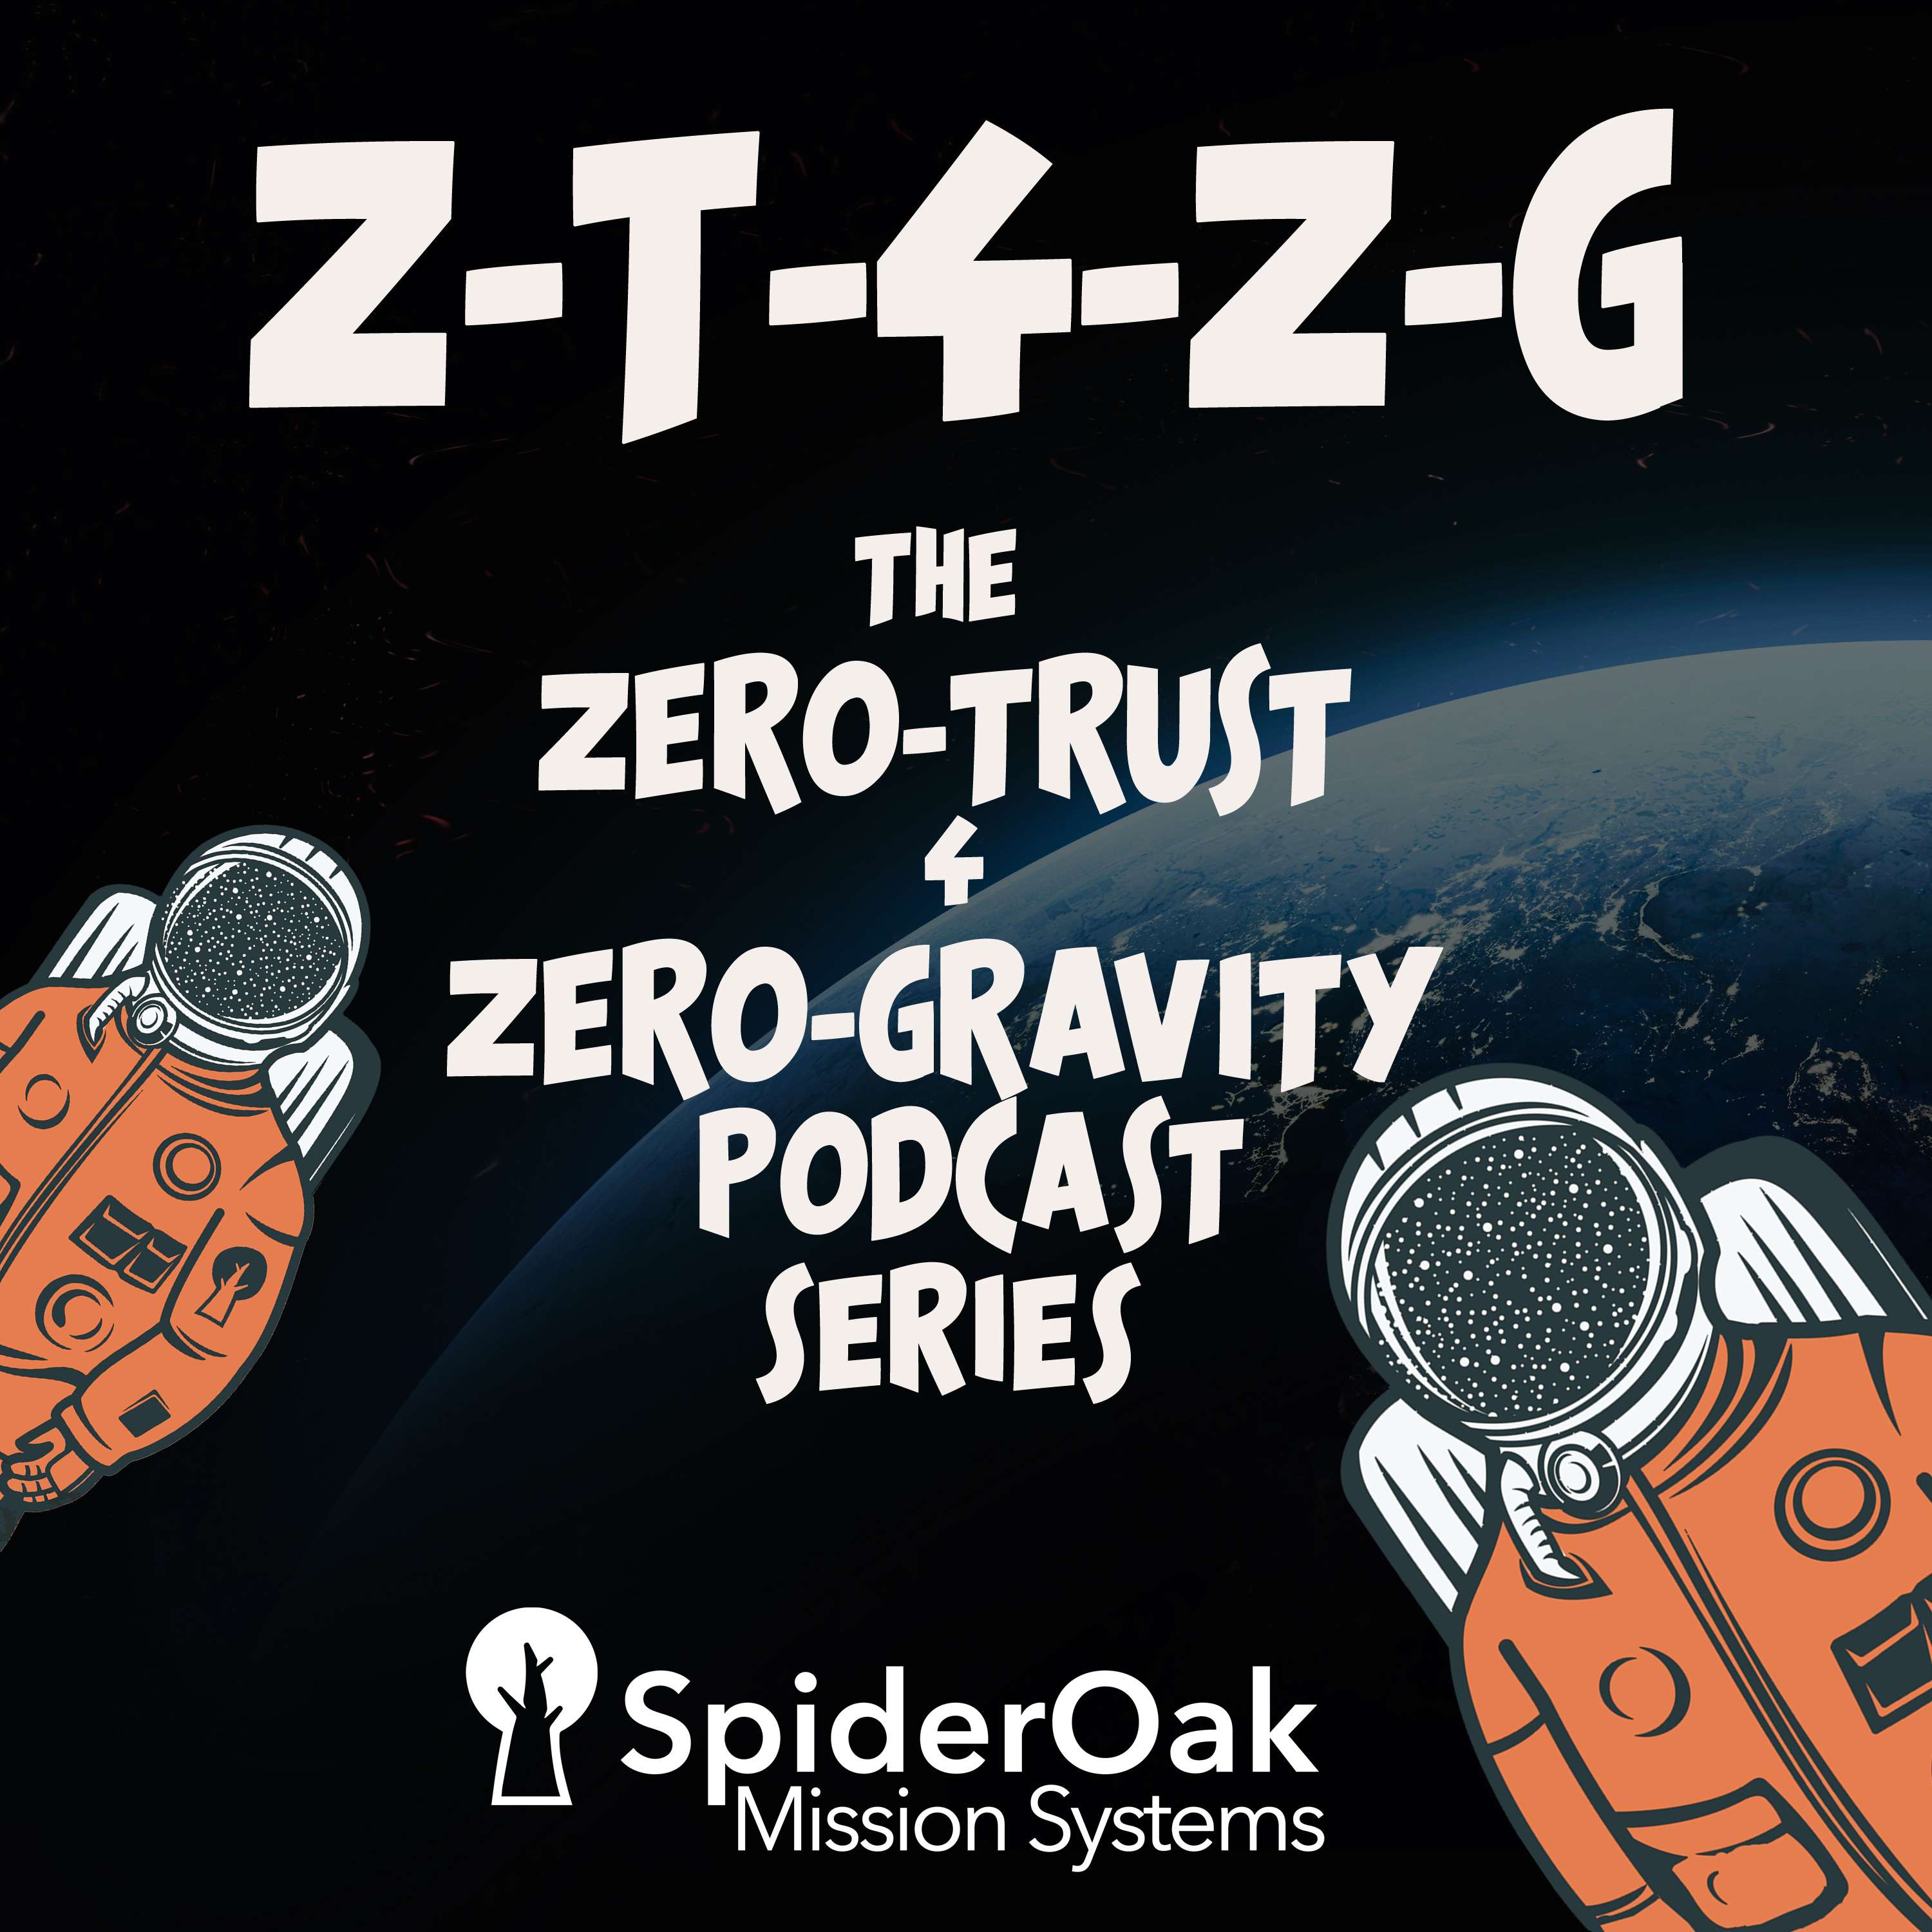 Zero-Trust 4 Zero-Gravity